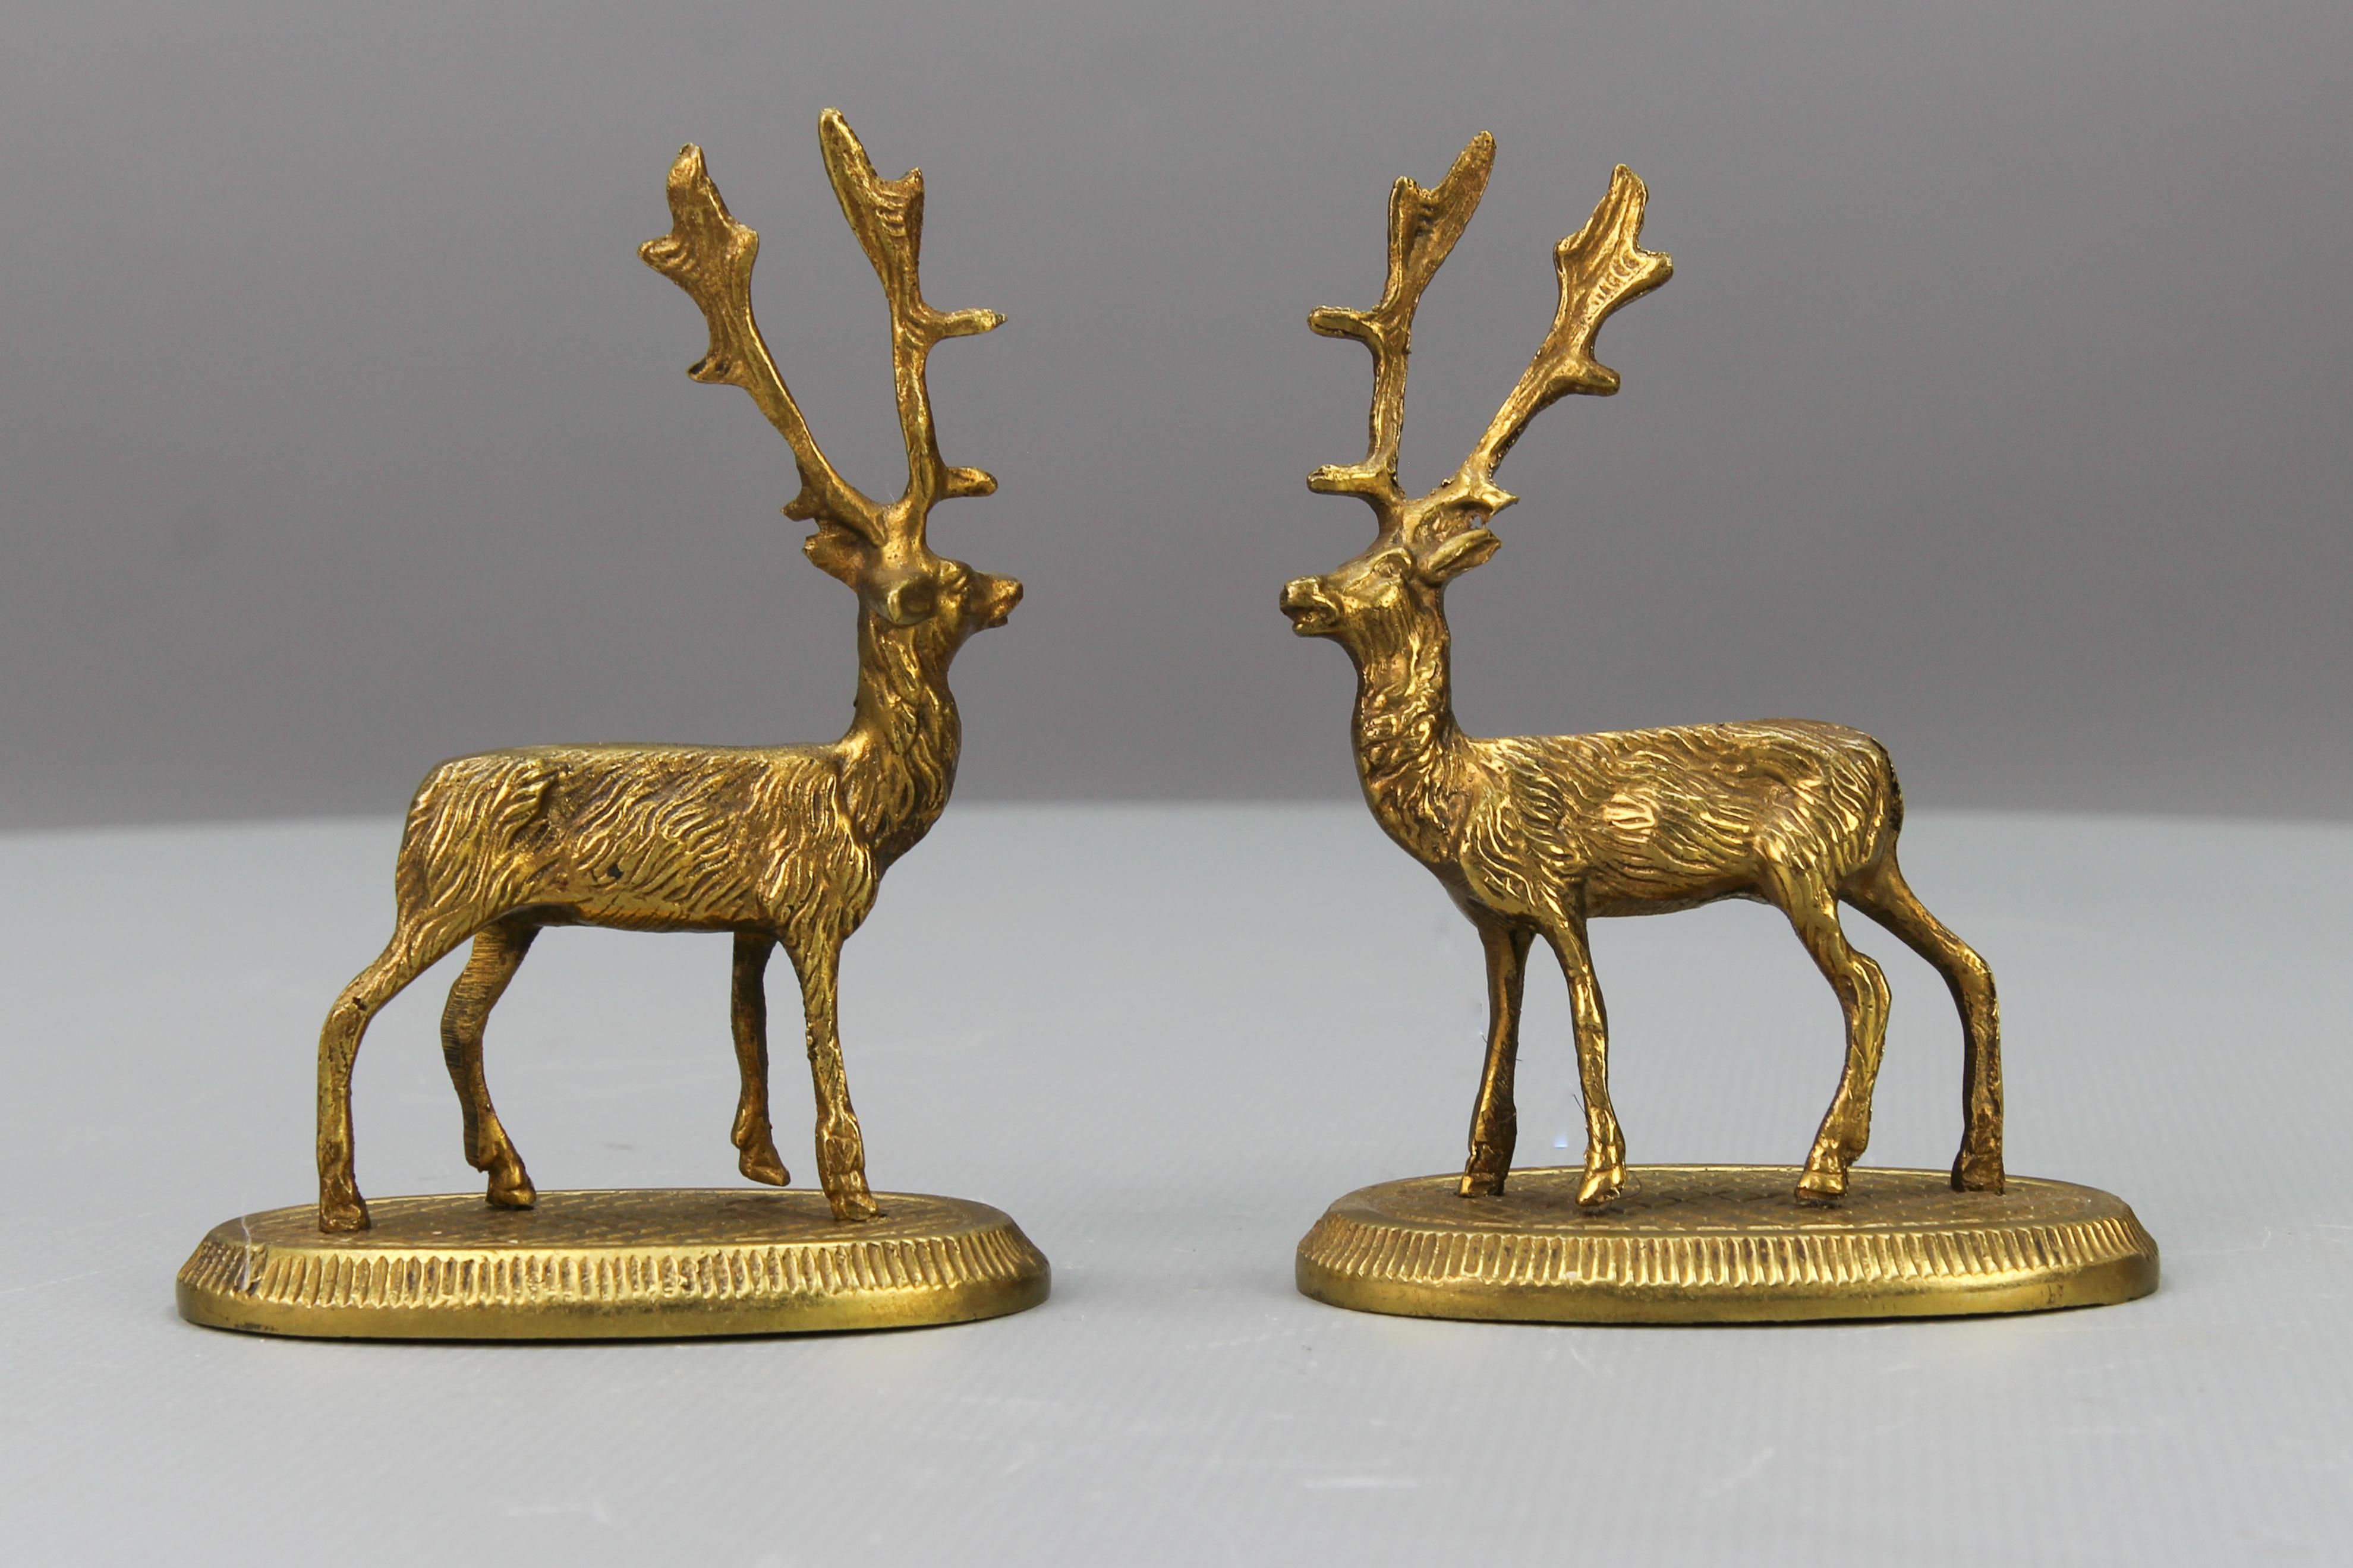 Les petites figurines de cerf en bronze, au nombre de deux, datent des années 1950. Il s'agit d'une paire de petites figurines de cerfs montées sur des piédestaux ovales. 
Les sculptures sont en bon état, avec de légers signes de vieillissement.